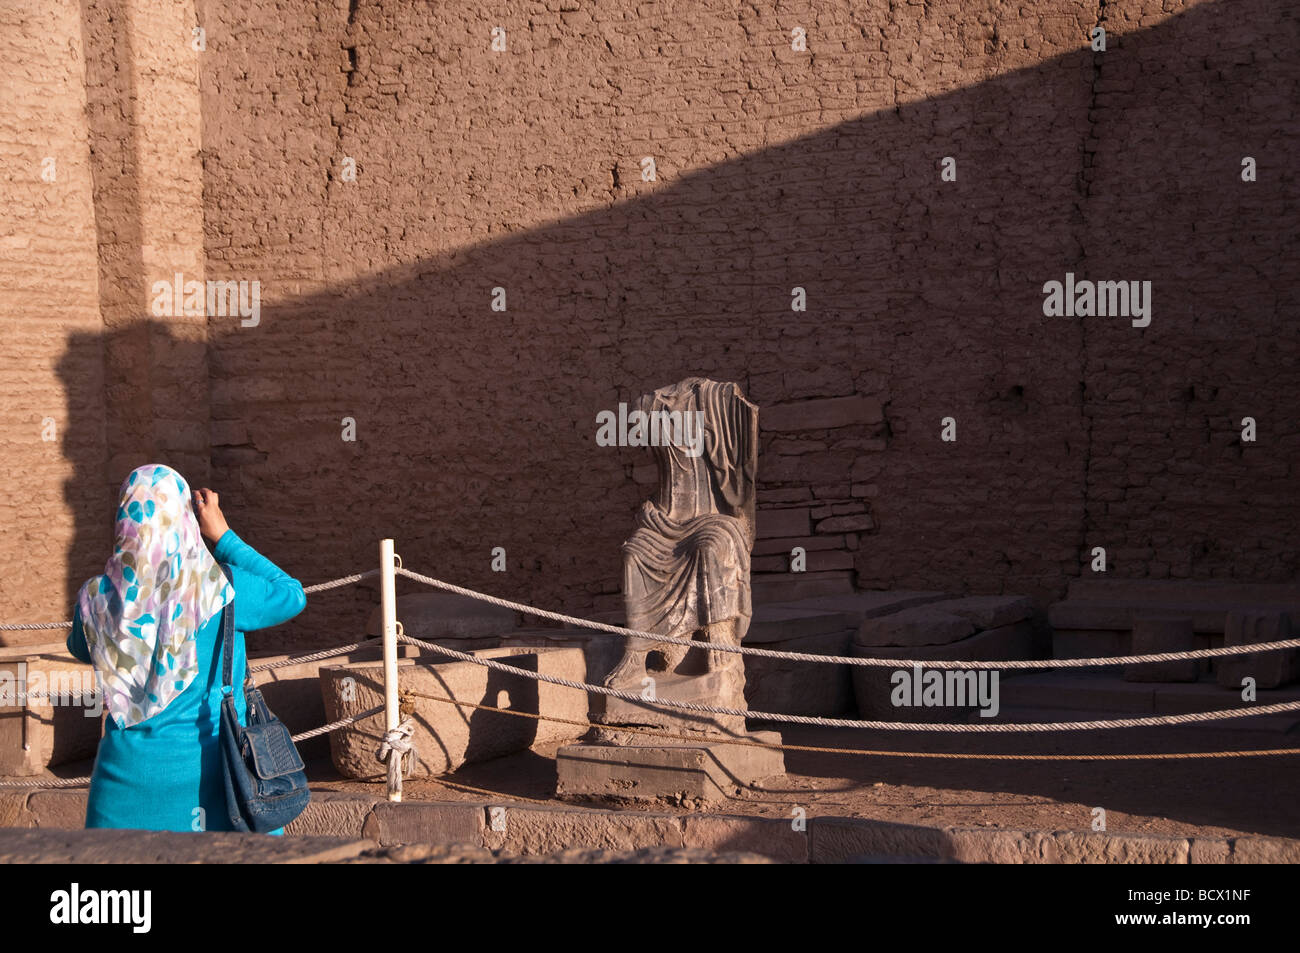 Ägypten Kom Ombo Tempel Frau Mädchen muslimischen Stil Schal dress Fotos Statue Touristen Fotografen Stockfoto